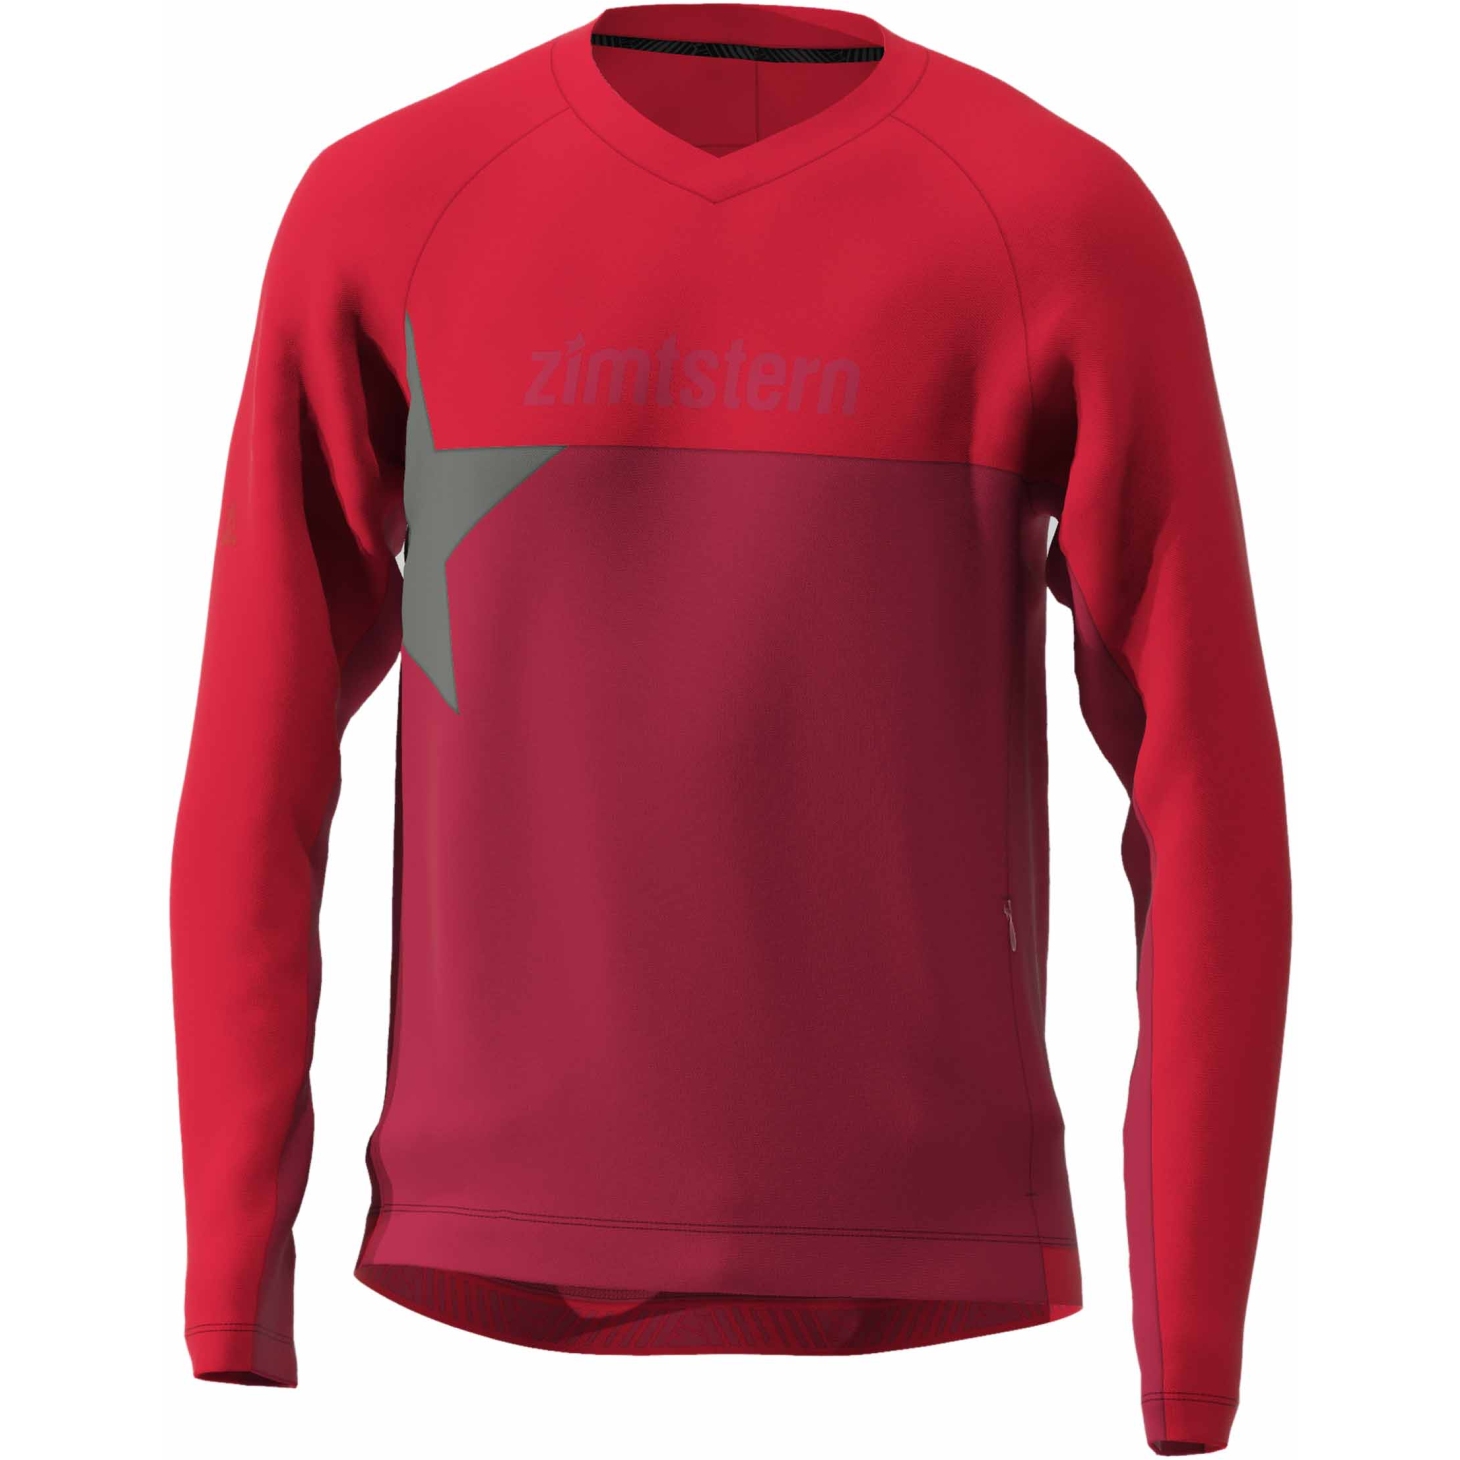 Produktbild von Zimtstern Bulletz Langarm MTB-Shirt - jester red/cyber red